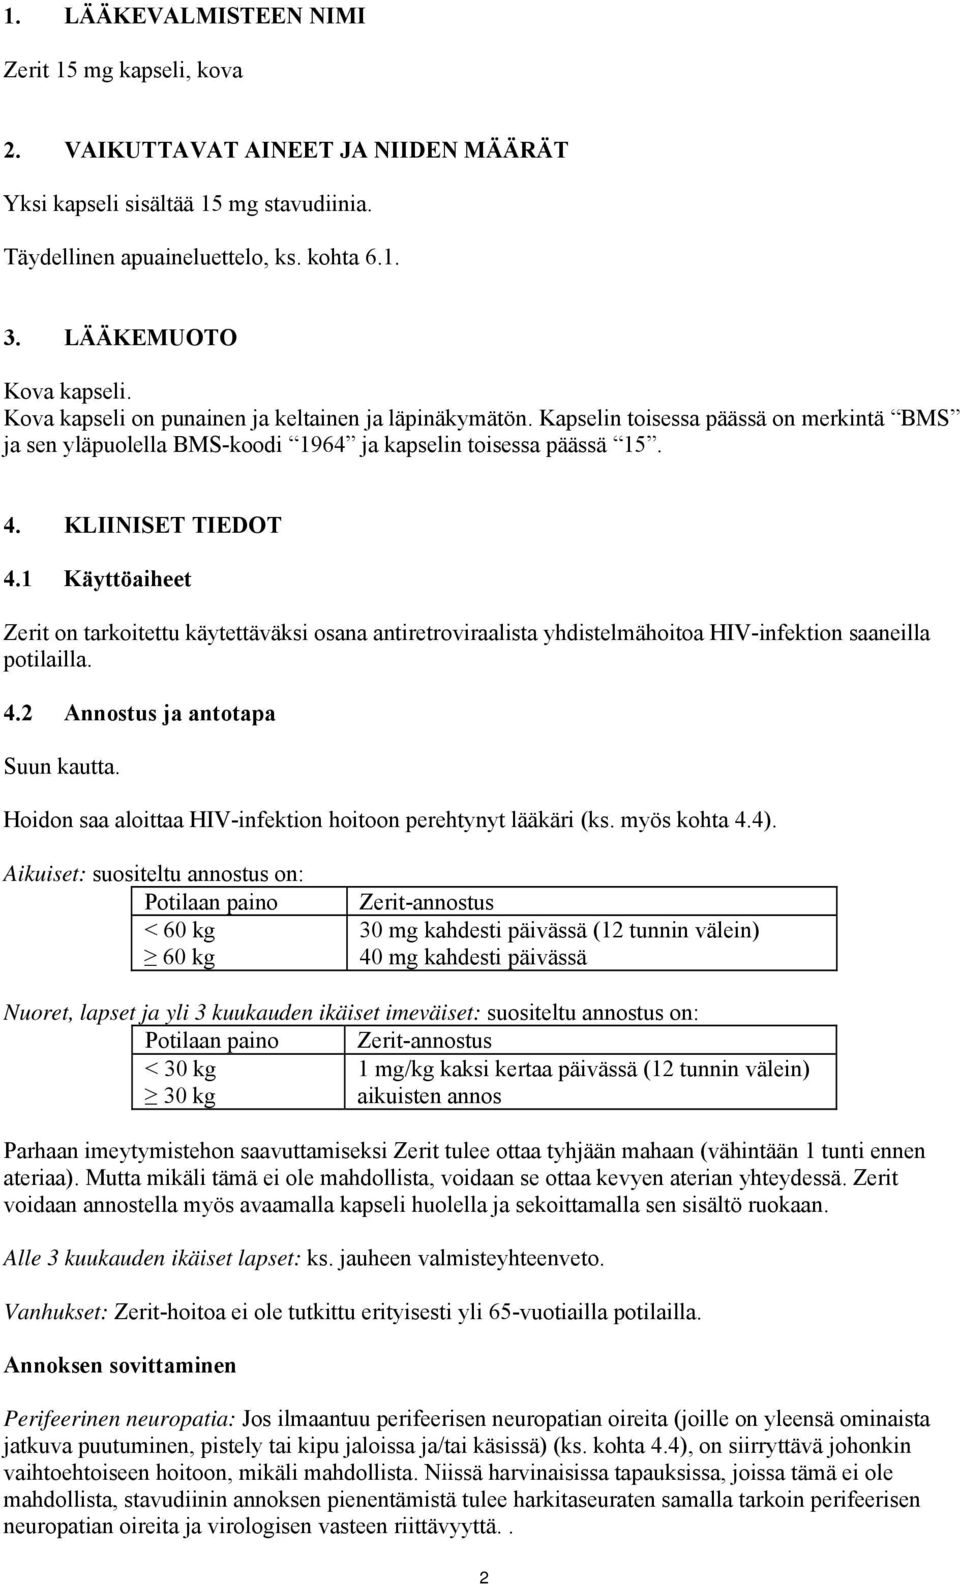 KLIINISET TIEDOT 4.1 Käyttöaiheet Zerit on tarkoitettu käytettäväksi osana antiretroviraalista yhdistelmähoitoa HIV-infektion saaneilla potilailla. 4.2 Annostus ja antotapa Suun kautta.